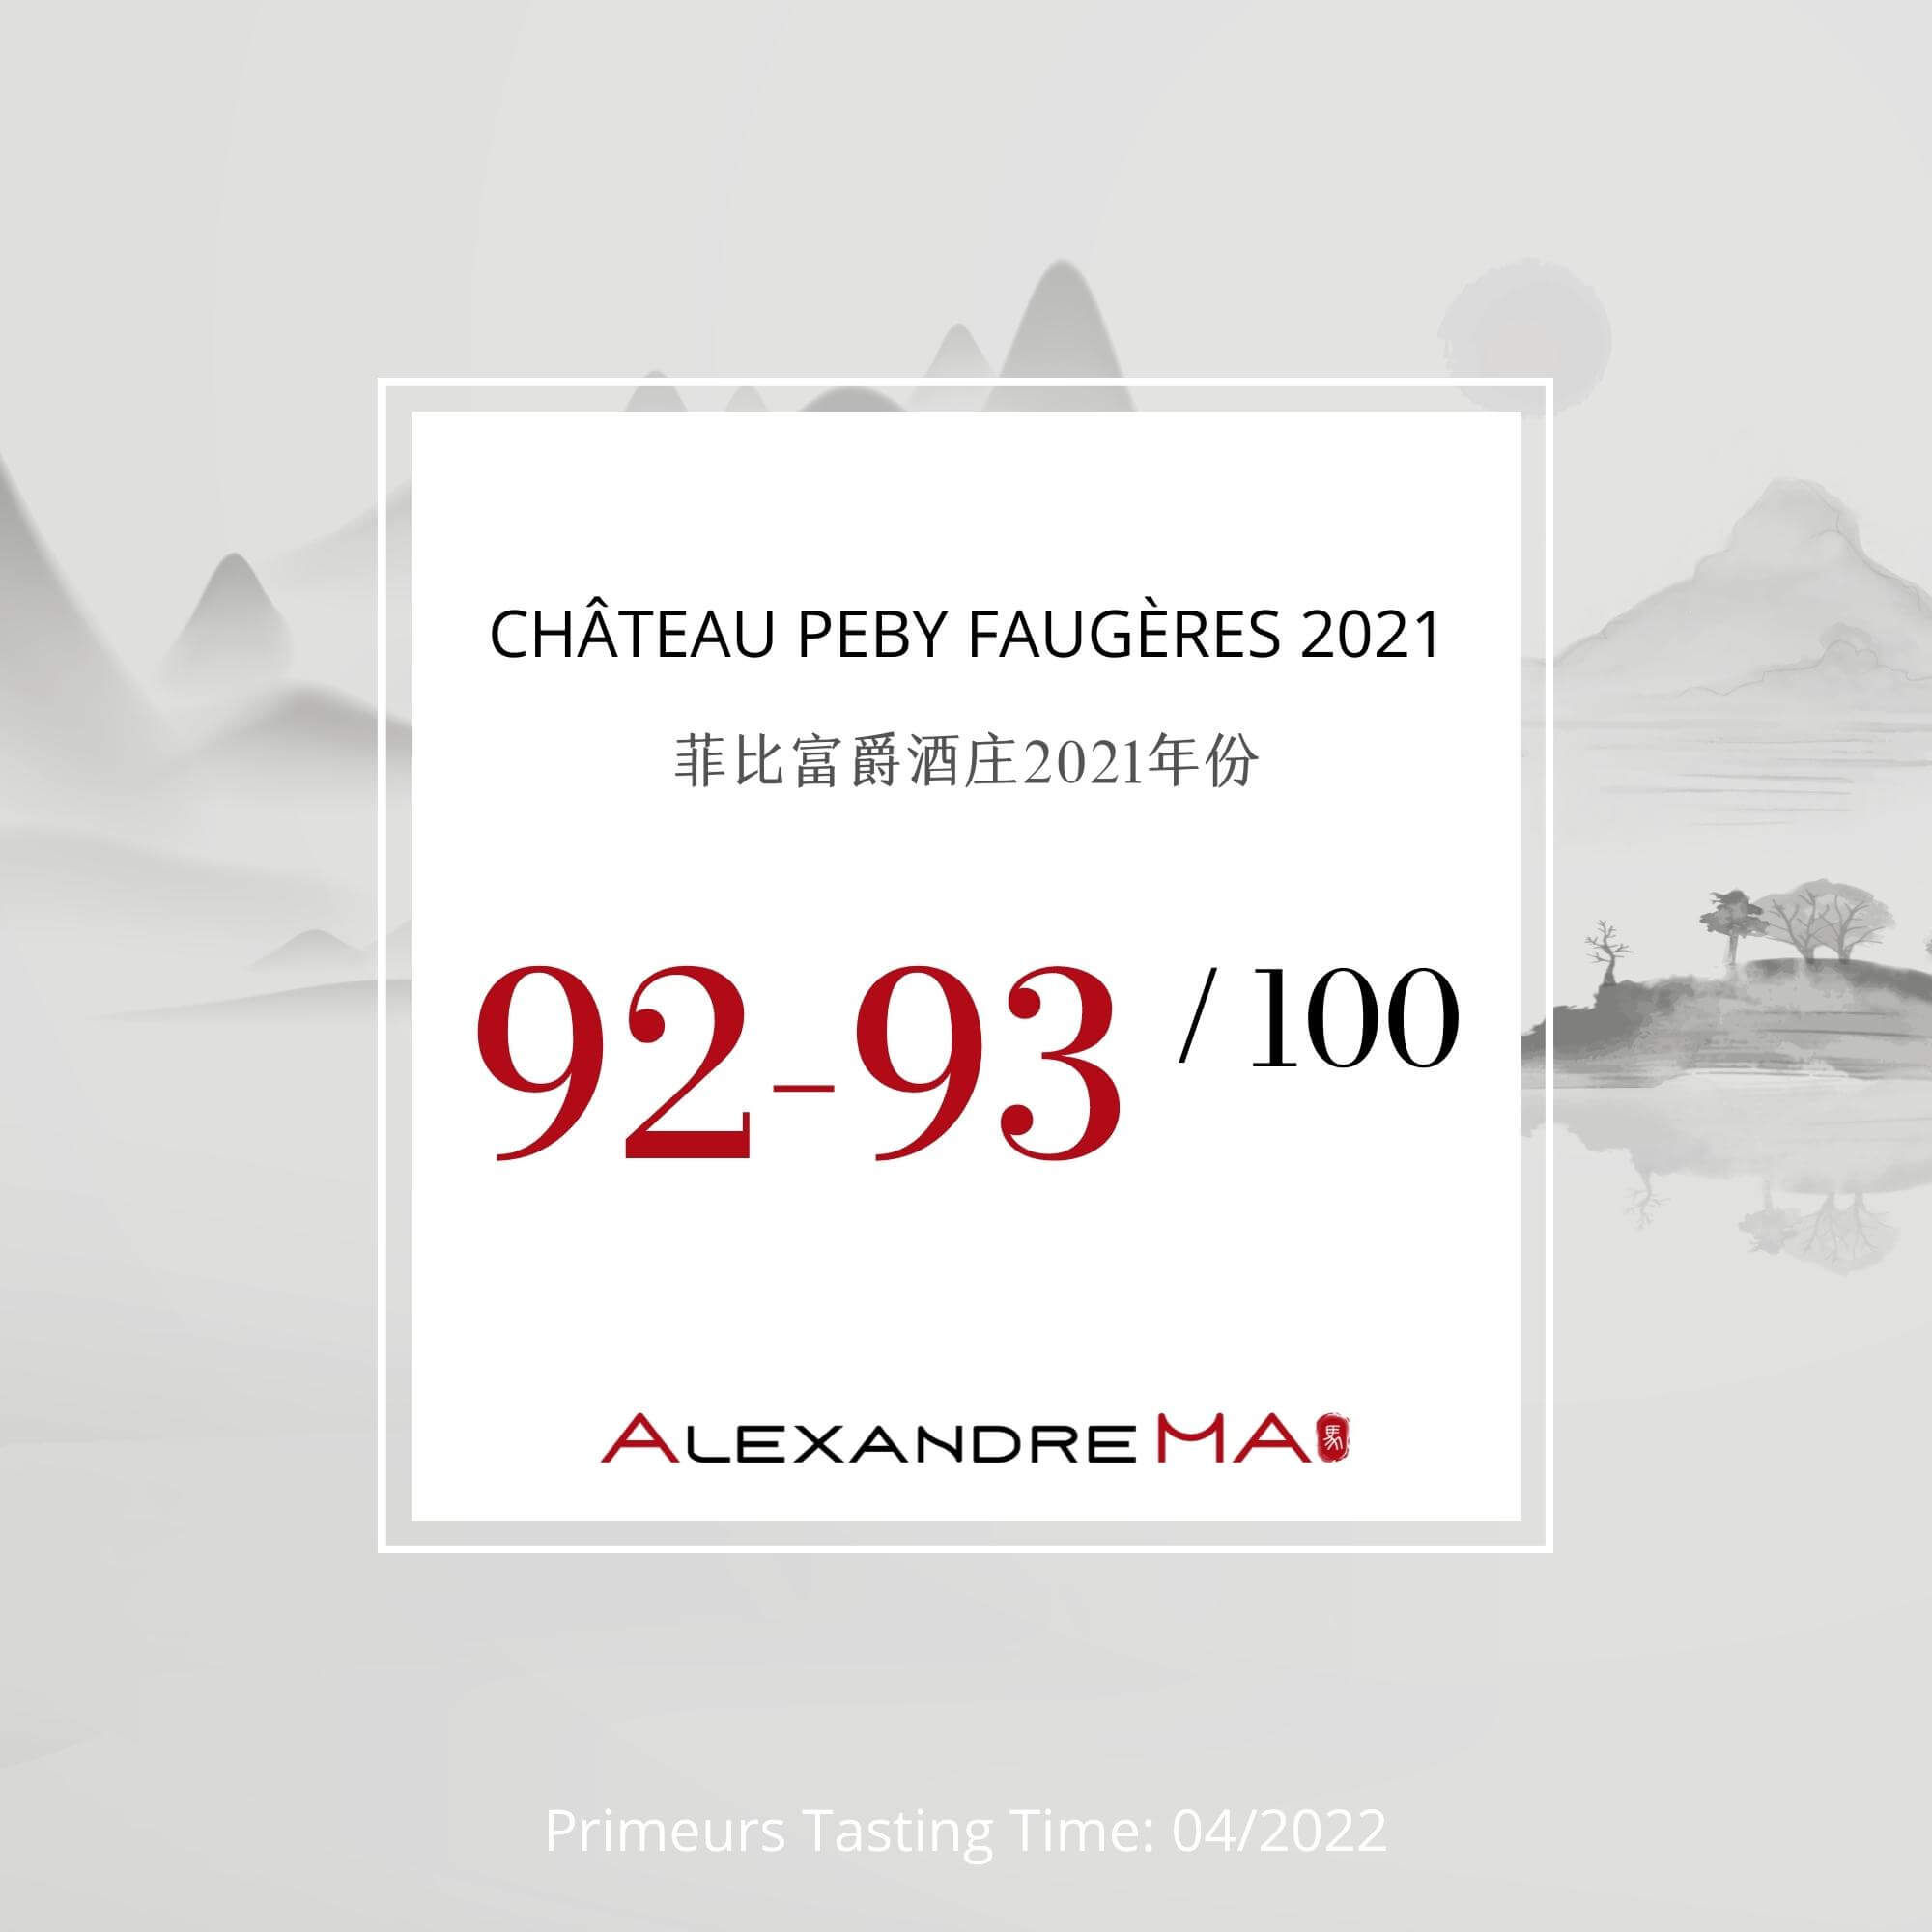 Château Peby Faugères 2021 - Alexandre MA